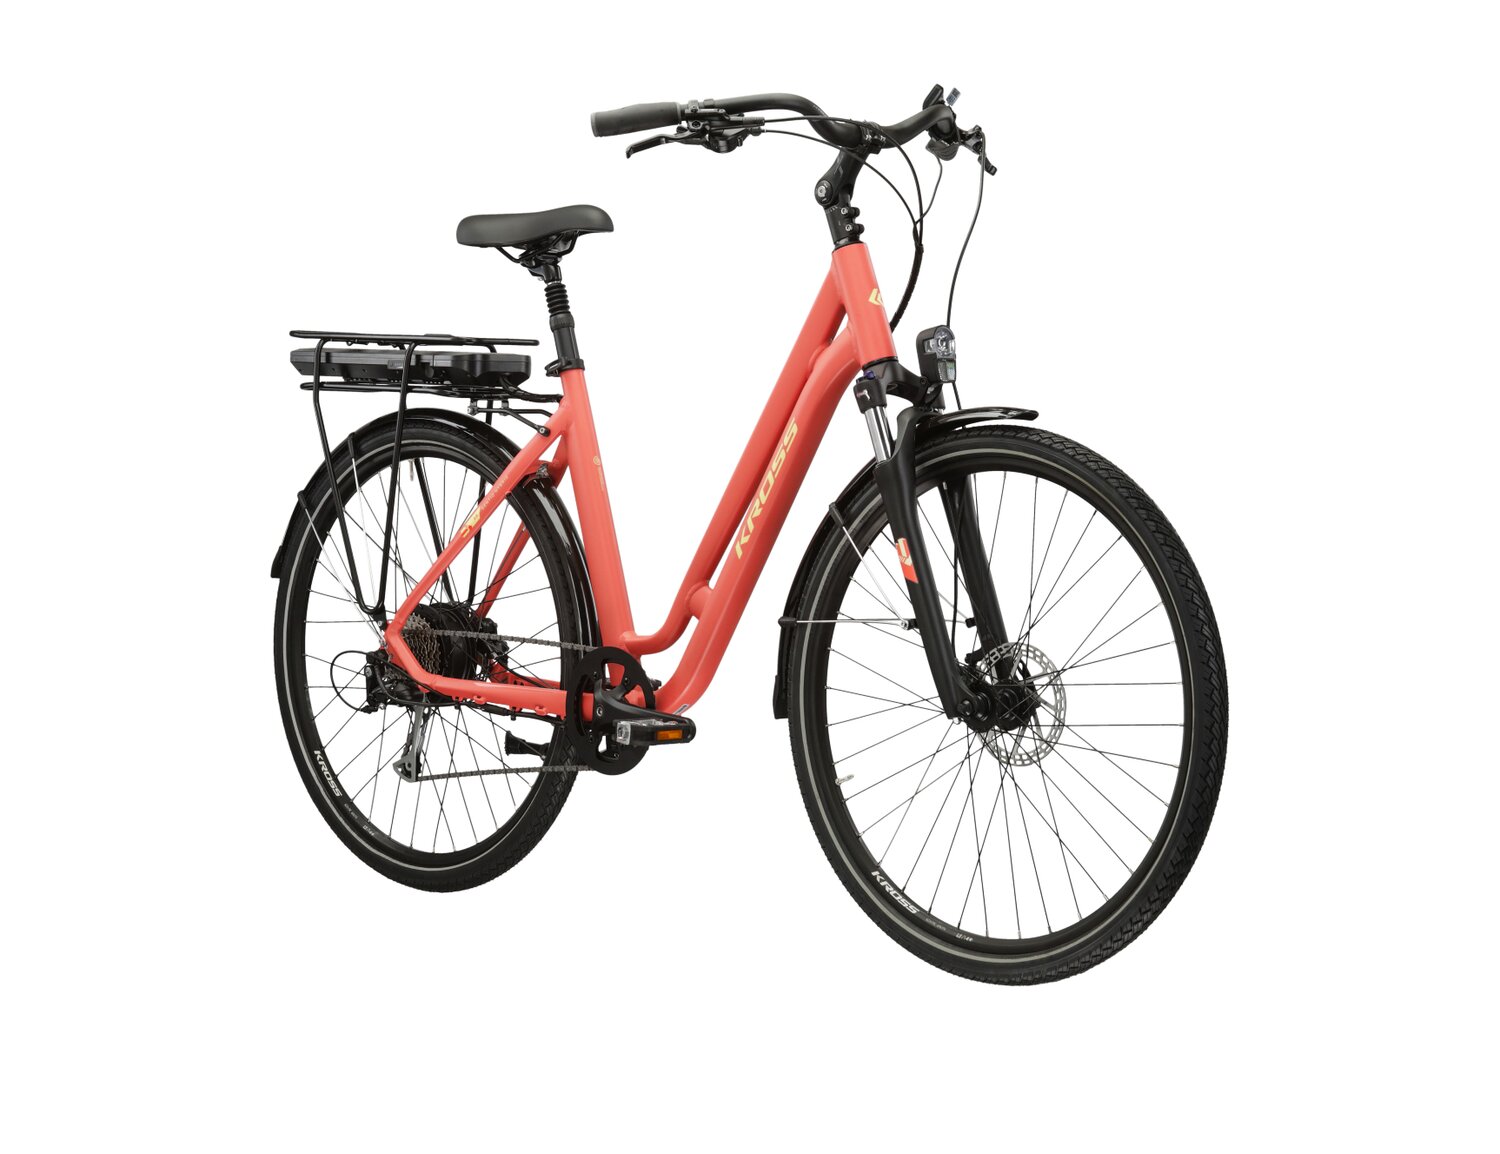  Elektryczny rower miejski Ebike City KROSS Sentio Hybrid 2.0 504 Wh na aluminiowej ramie w kolorze koralowym wyposażony w osprzęt Microshift i napęd elektryczny Bafang